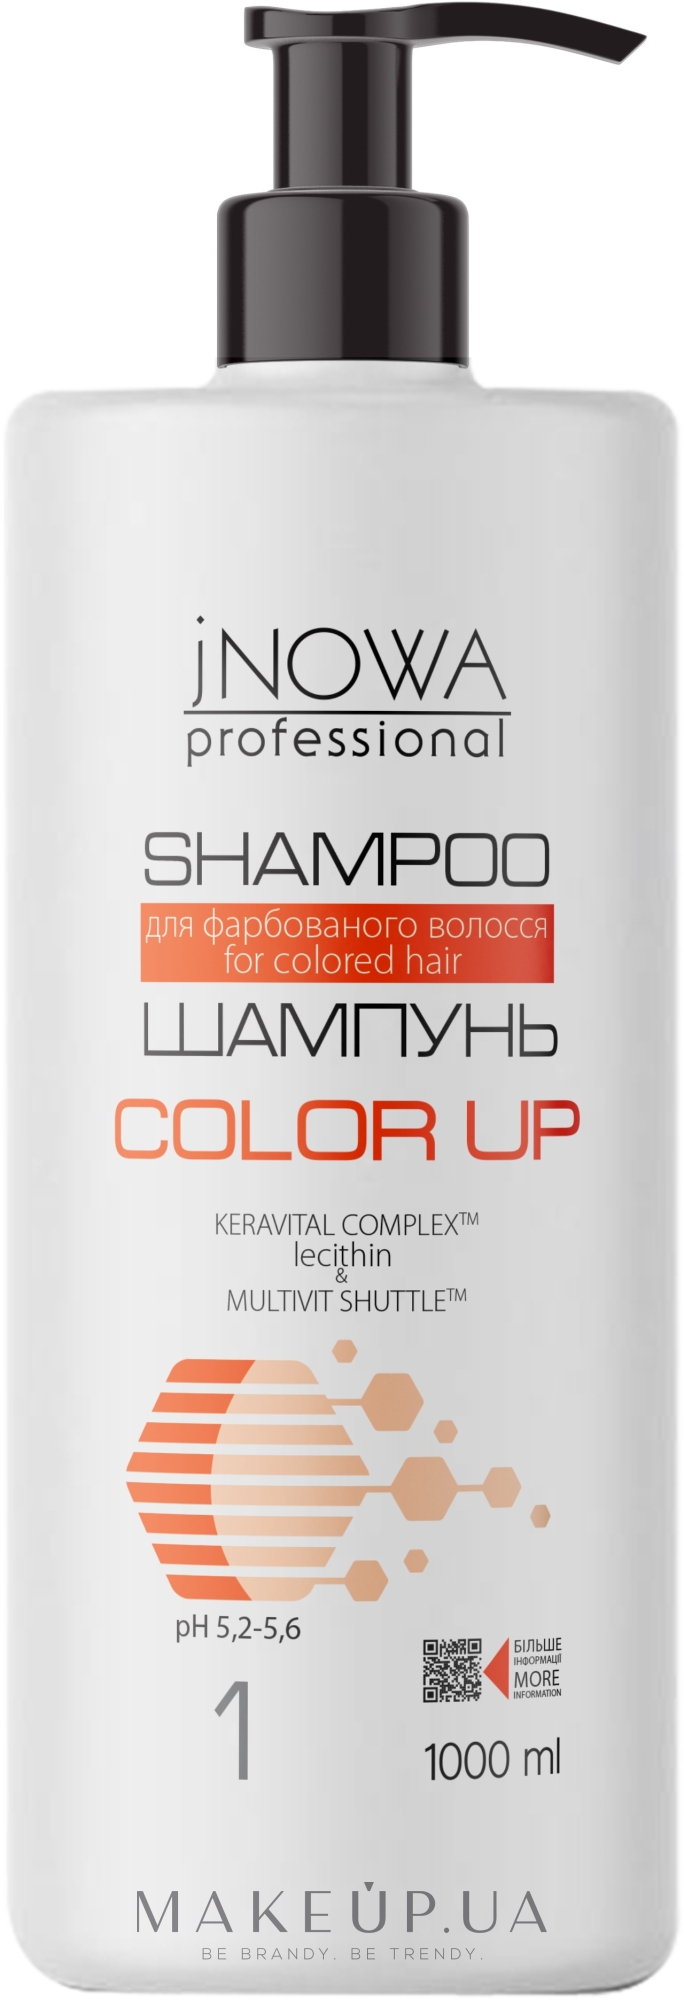 Шампунь для фарбованого волосся, з дозатором - JNOWA Professional 1 Color Up Shampoo — фото 1000ml